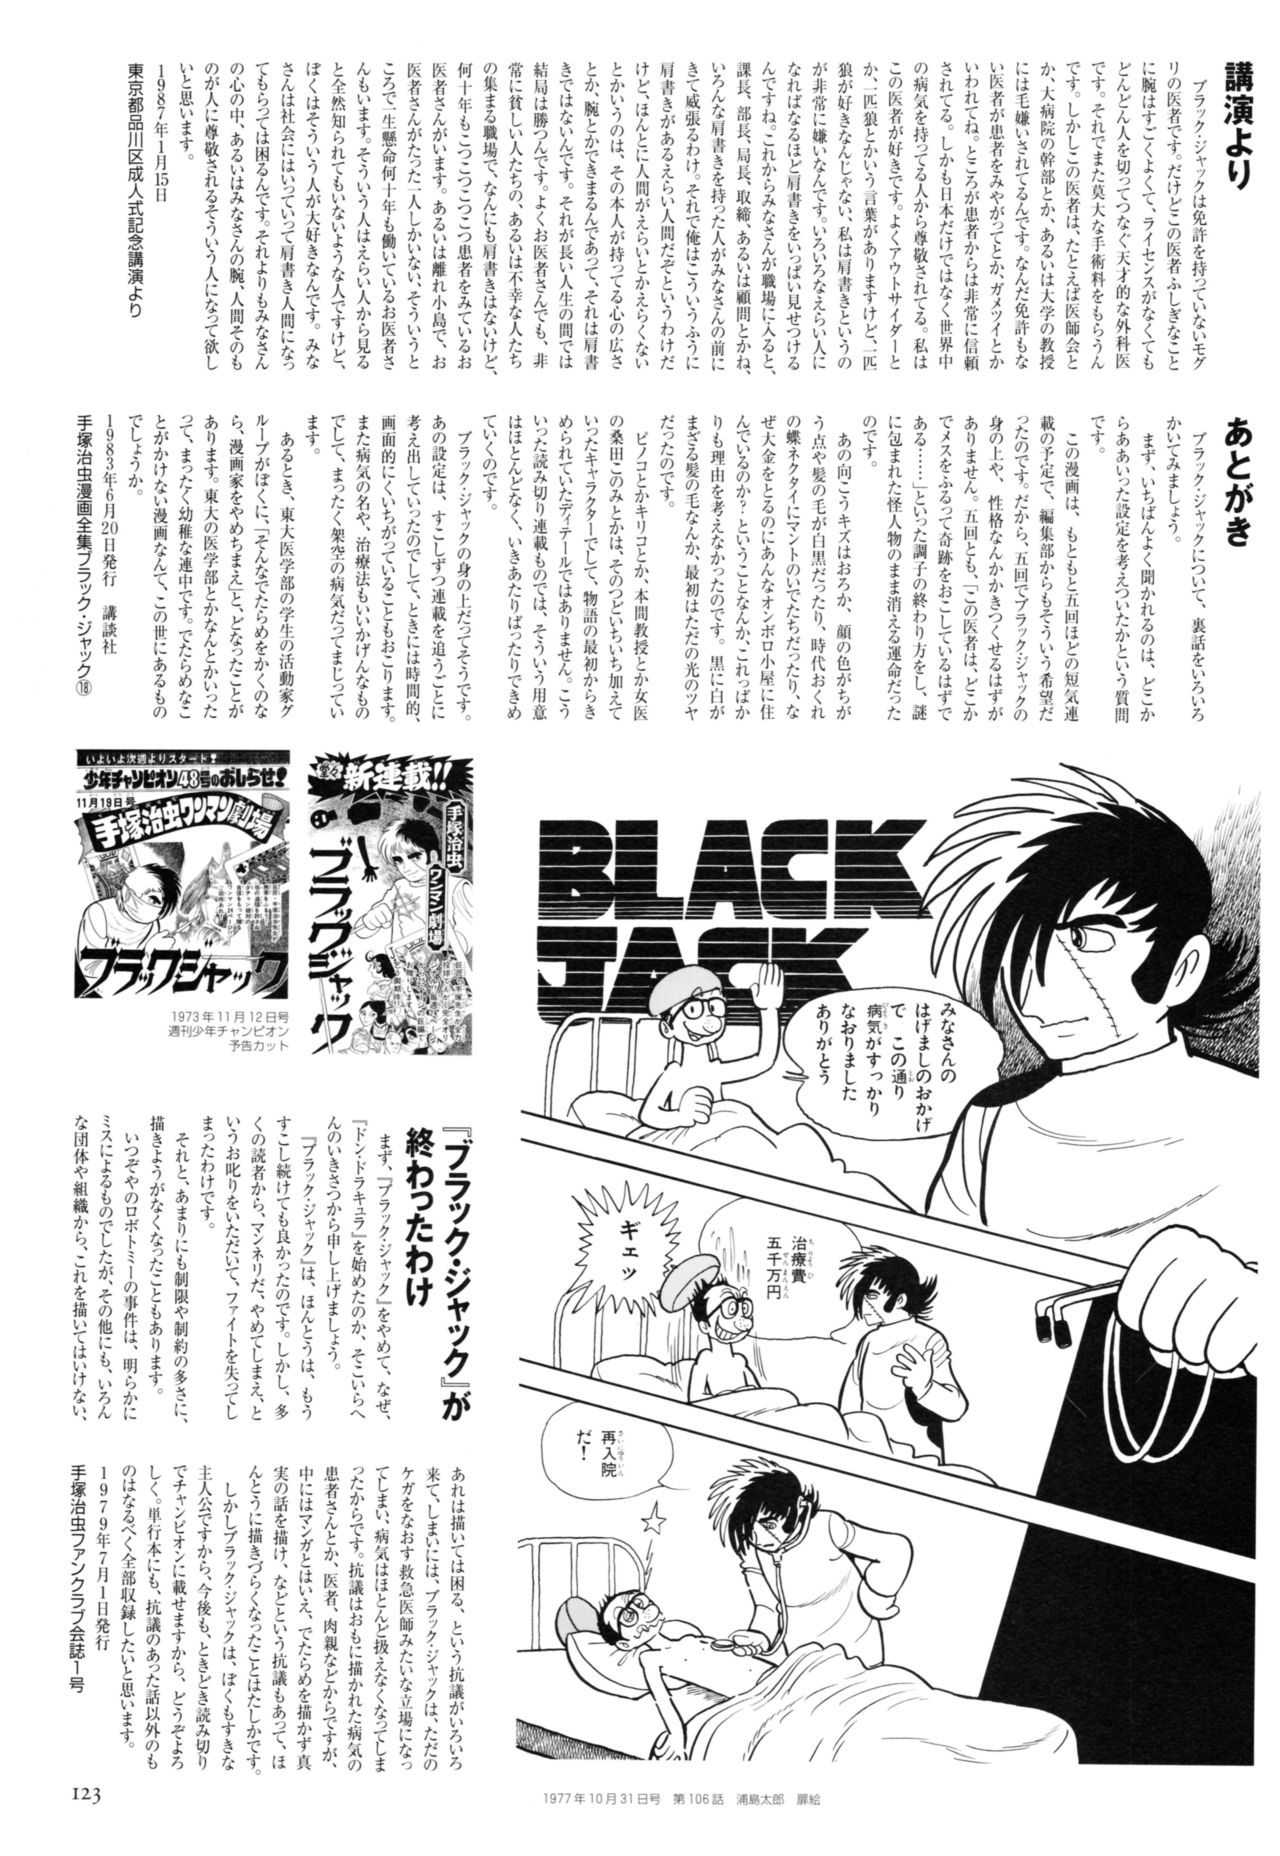 All of Black Jack By Osamu Tezuka 127